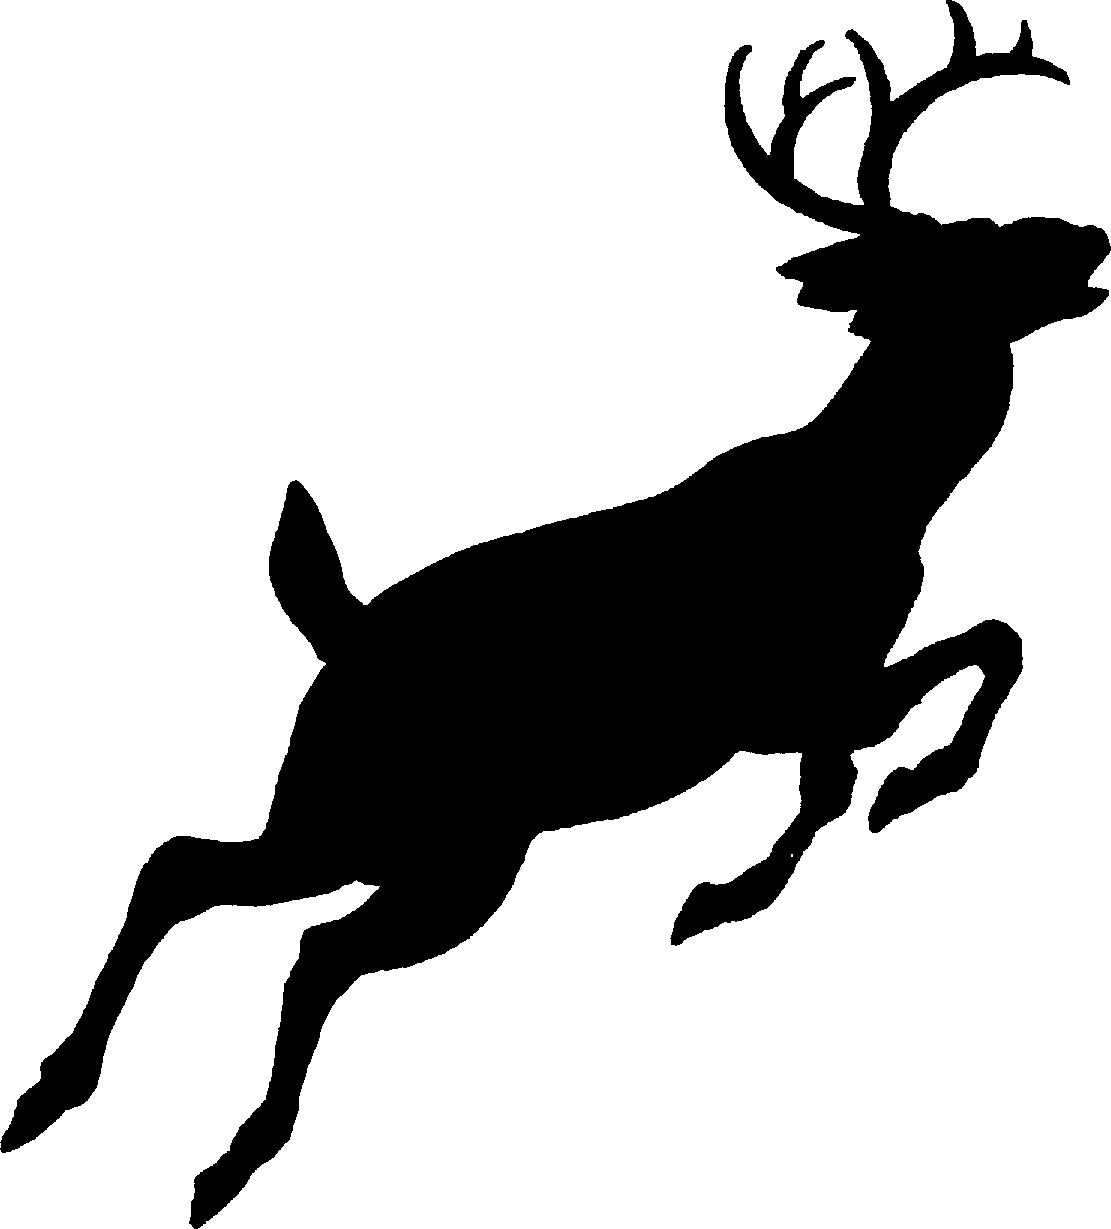 Clipart Of A Deer Skull - ClipArt Best